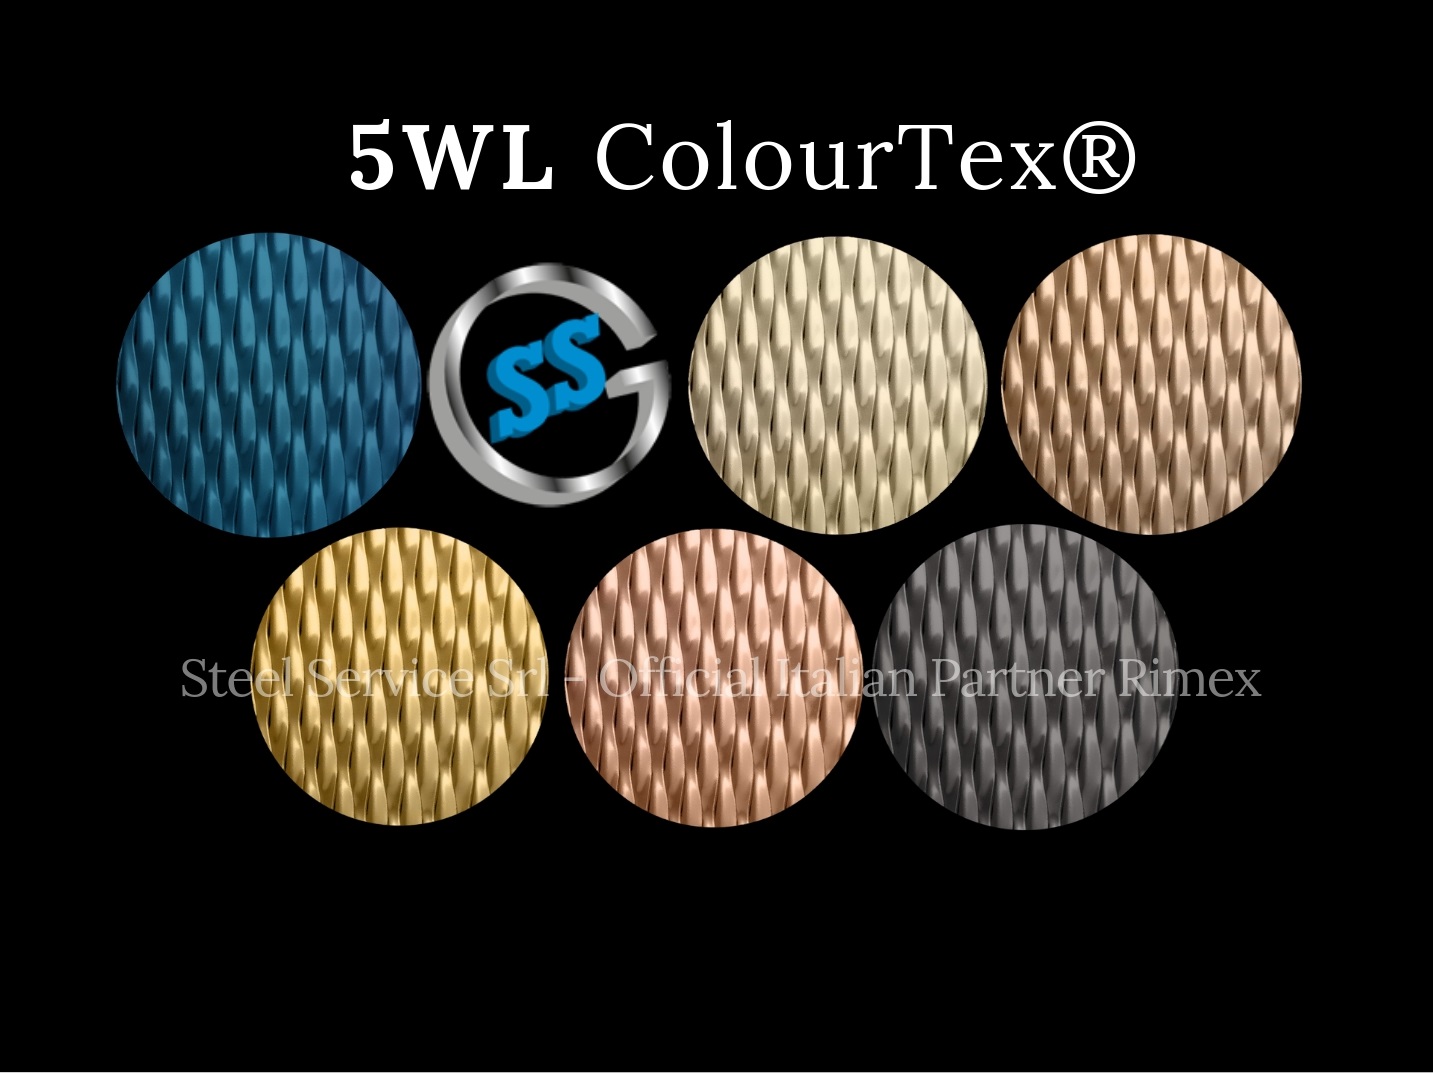 Lamiere 5WL colorate, Palette varianti elettro-colorate inox ColourTex delle lamiere inox 5WL, inox rigidizzato galvanico 5WL, inox chicco di riso elettro-colorato